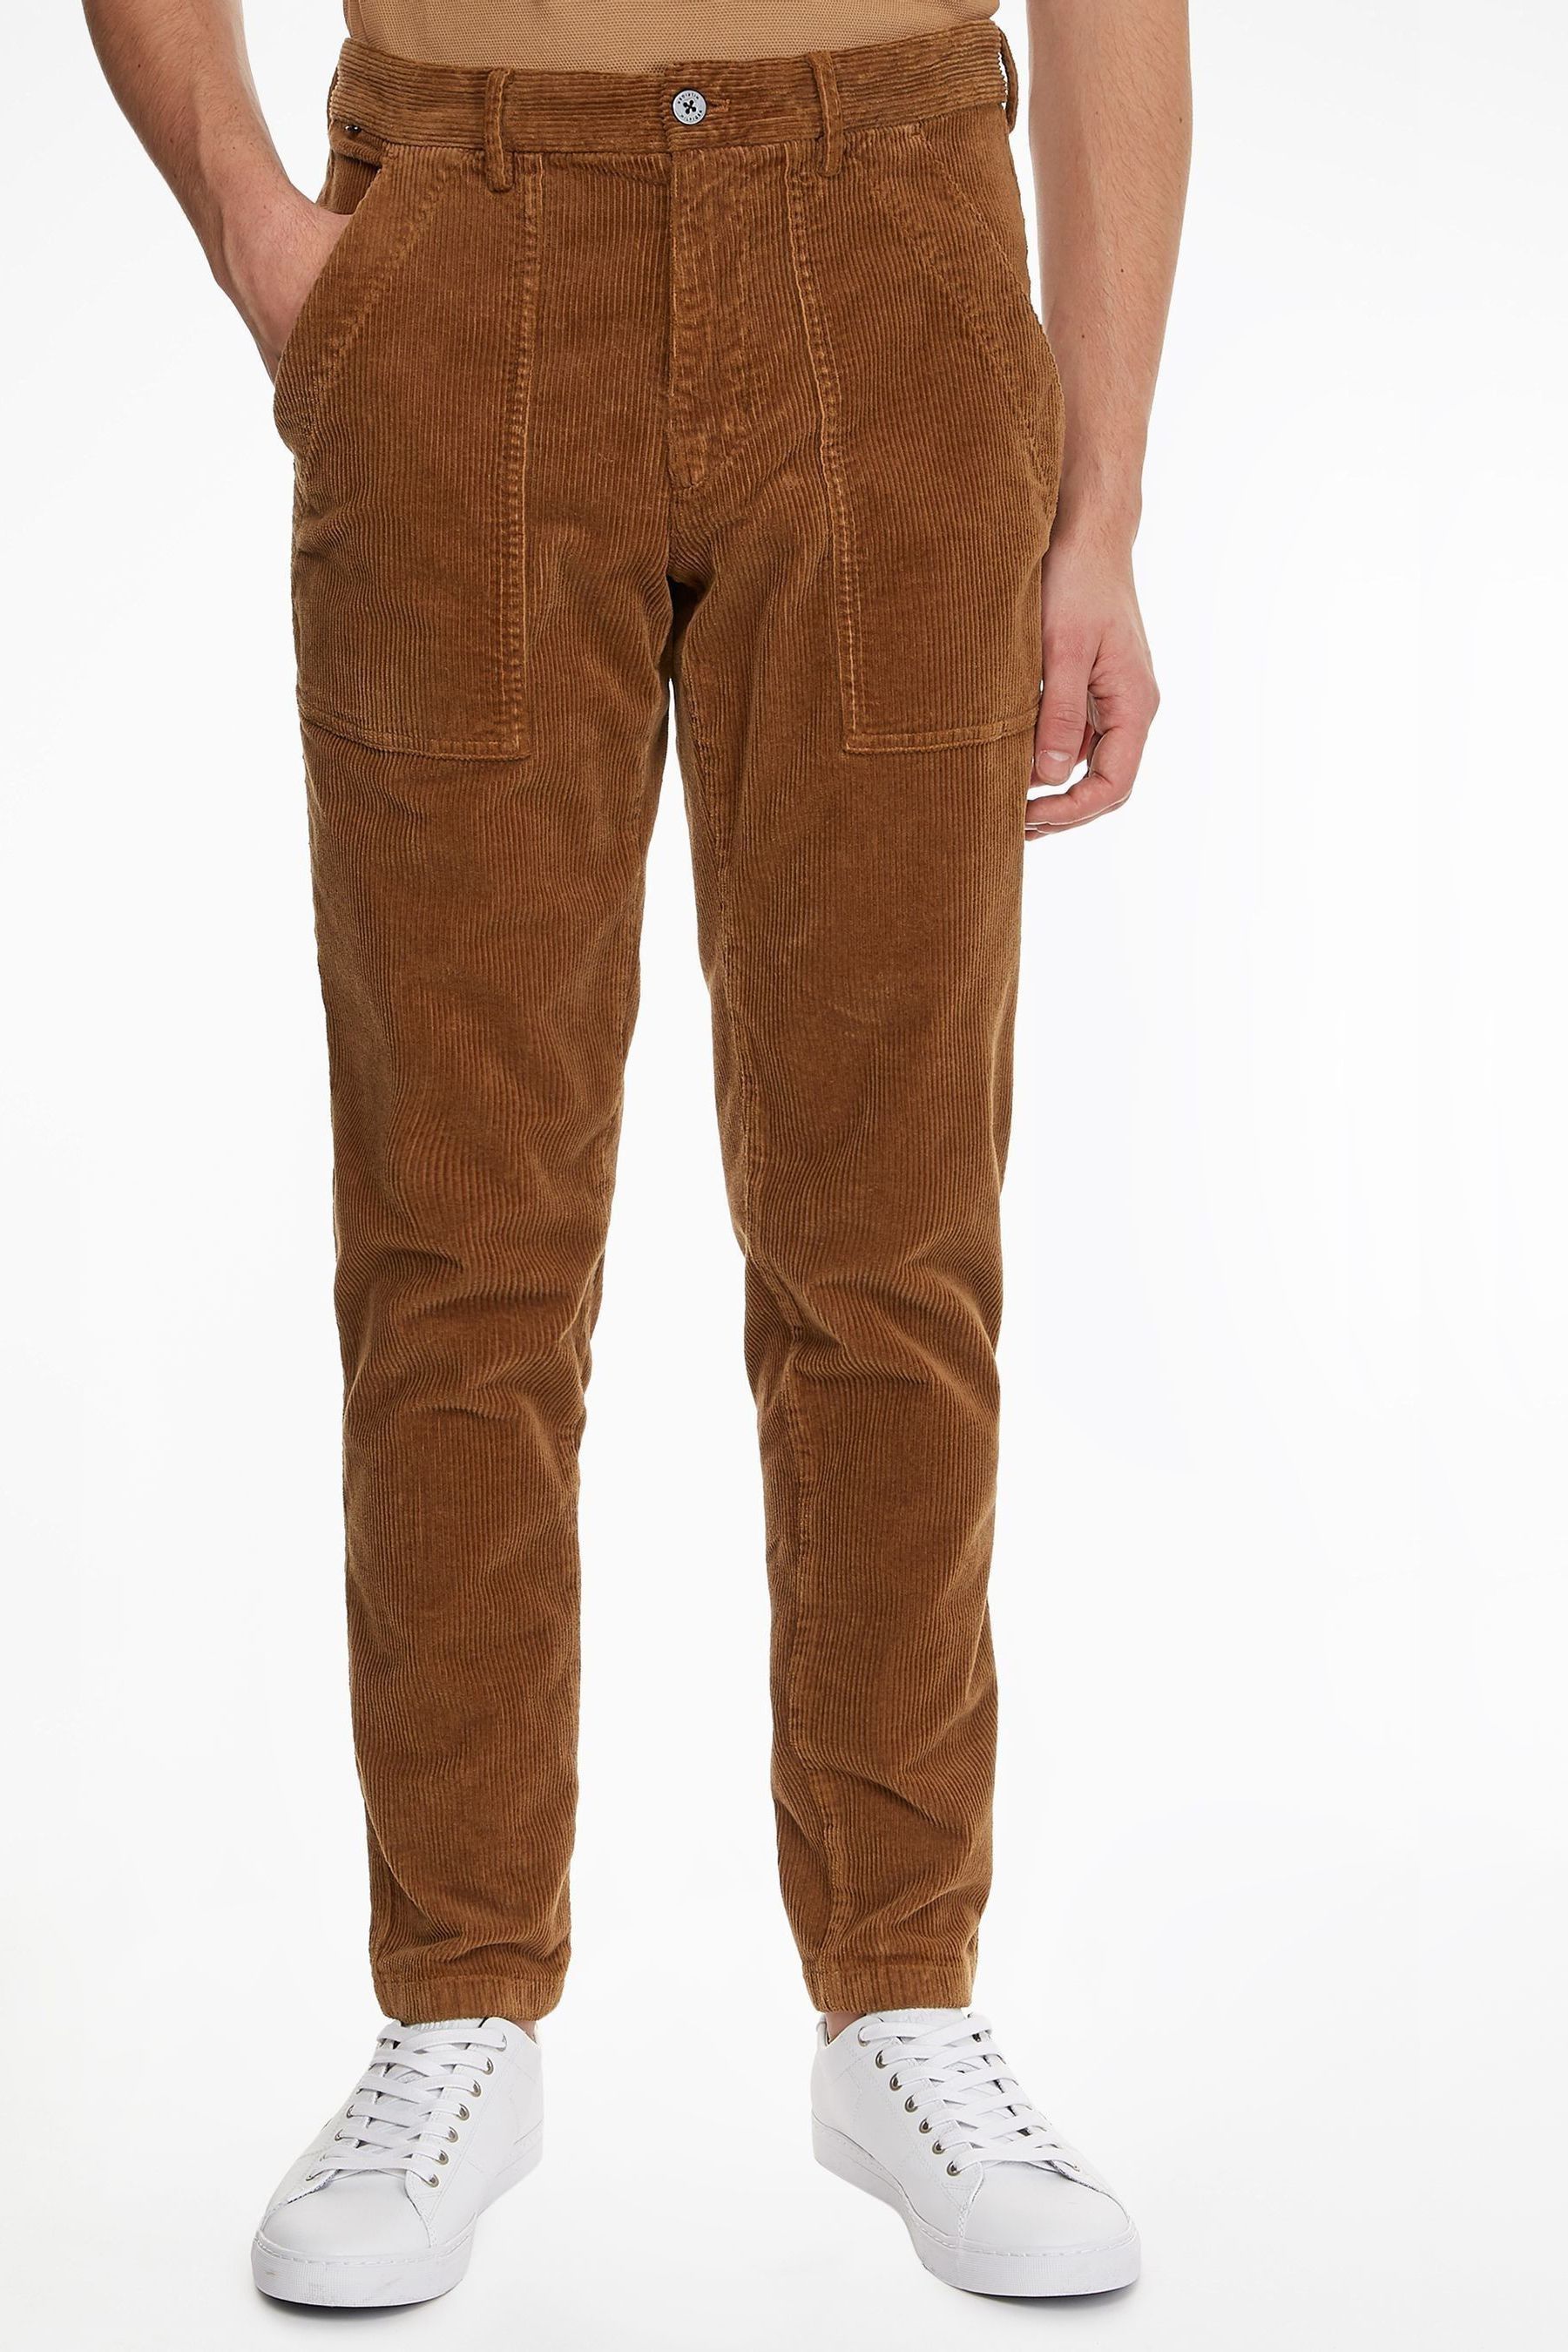 Коричневые вельветовые брюки-чиносы Denton Tommy Hilfiger, коричневый